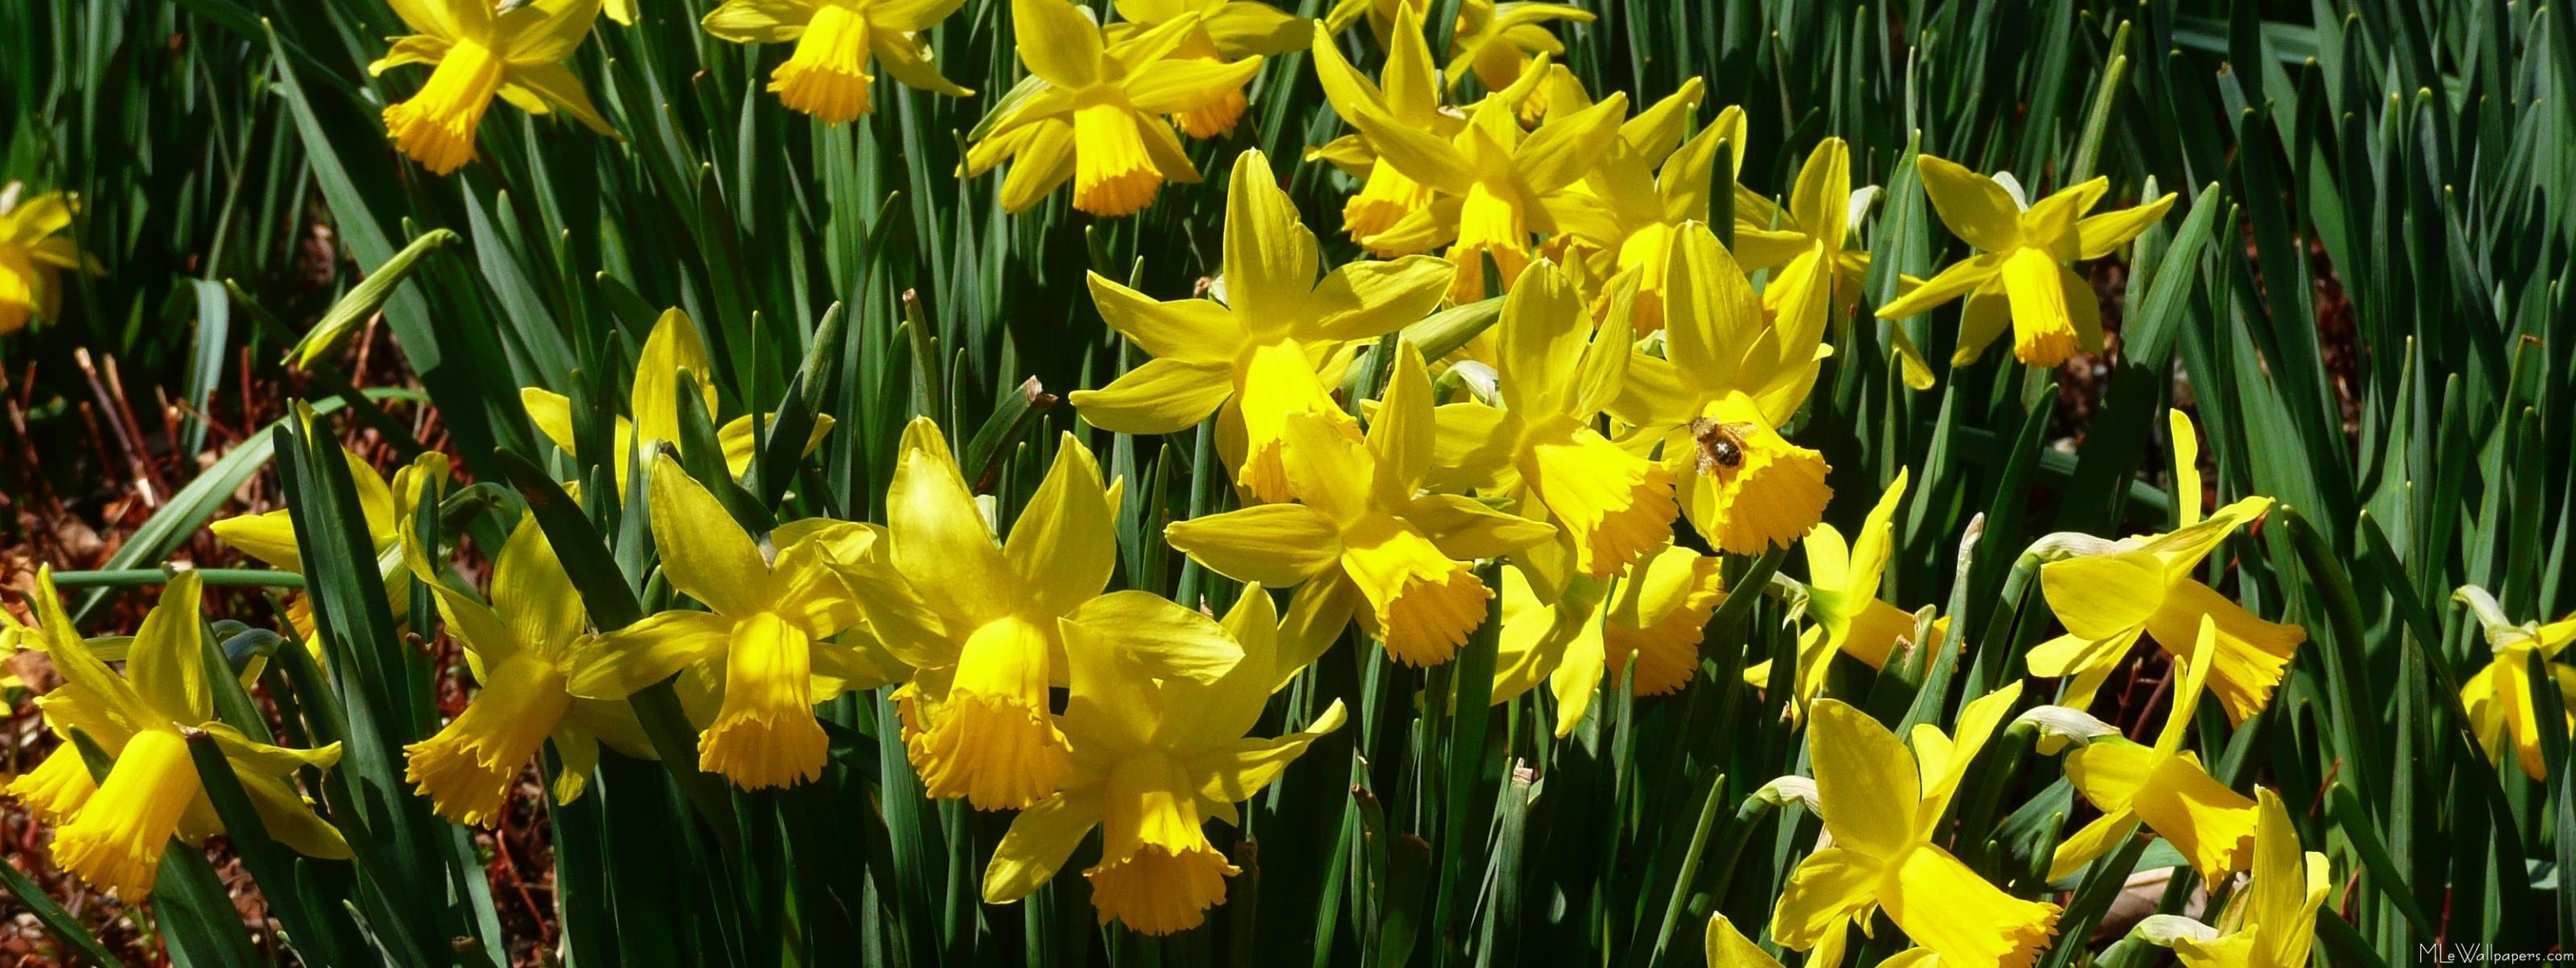 MLe Daffodils I